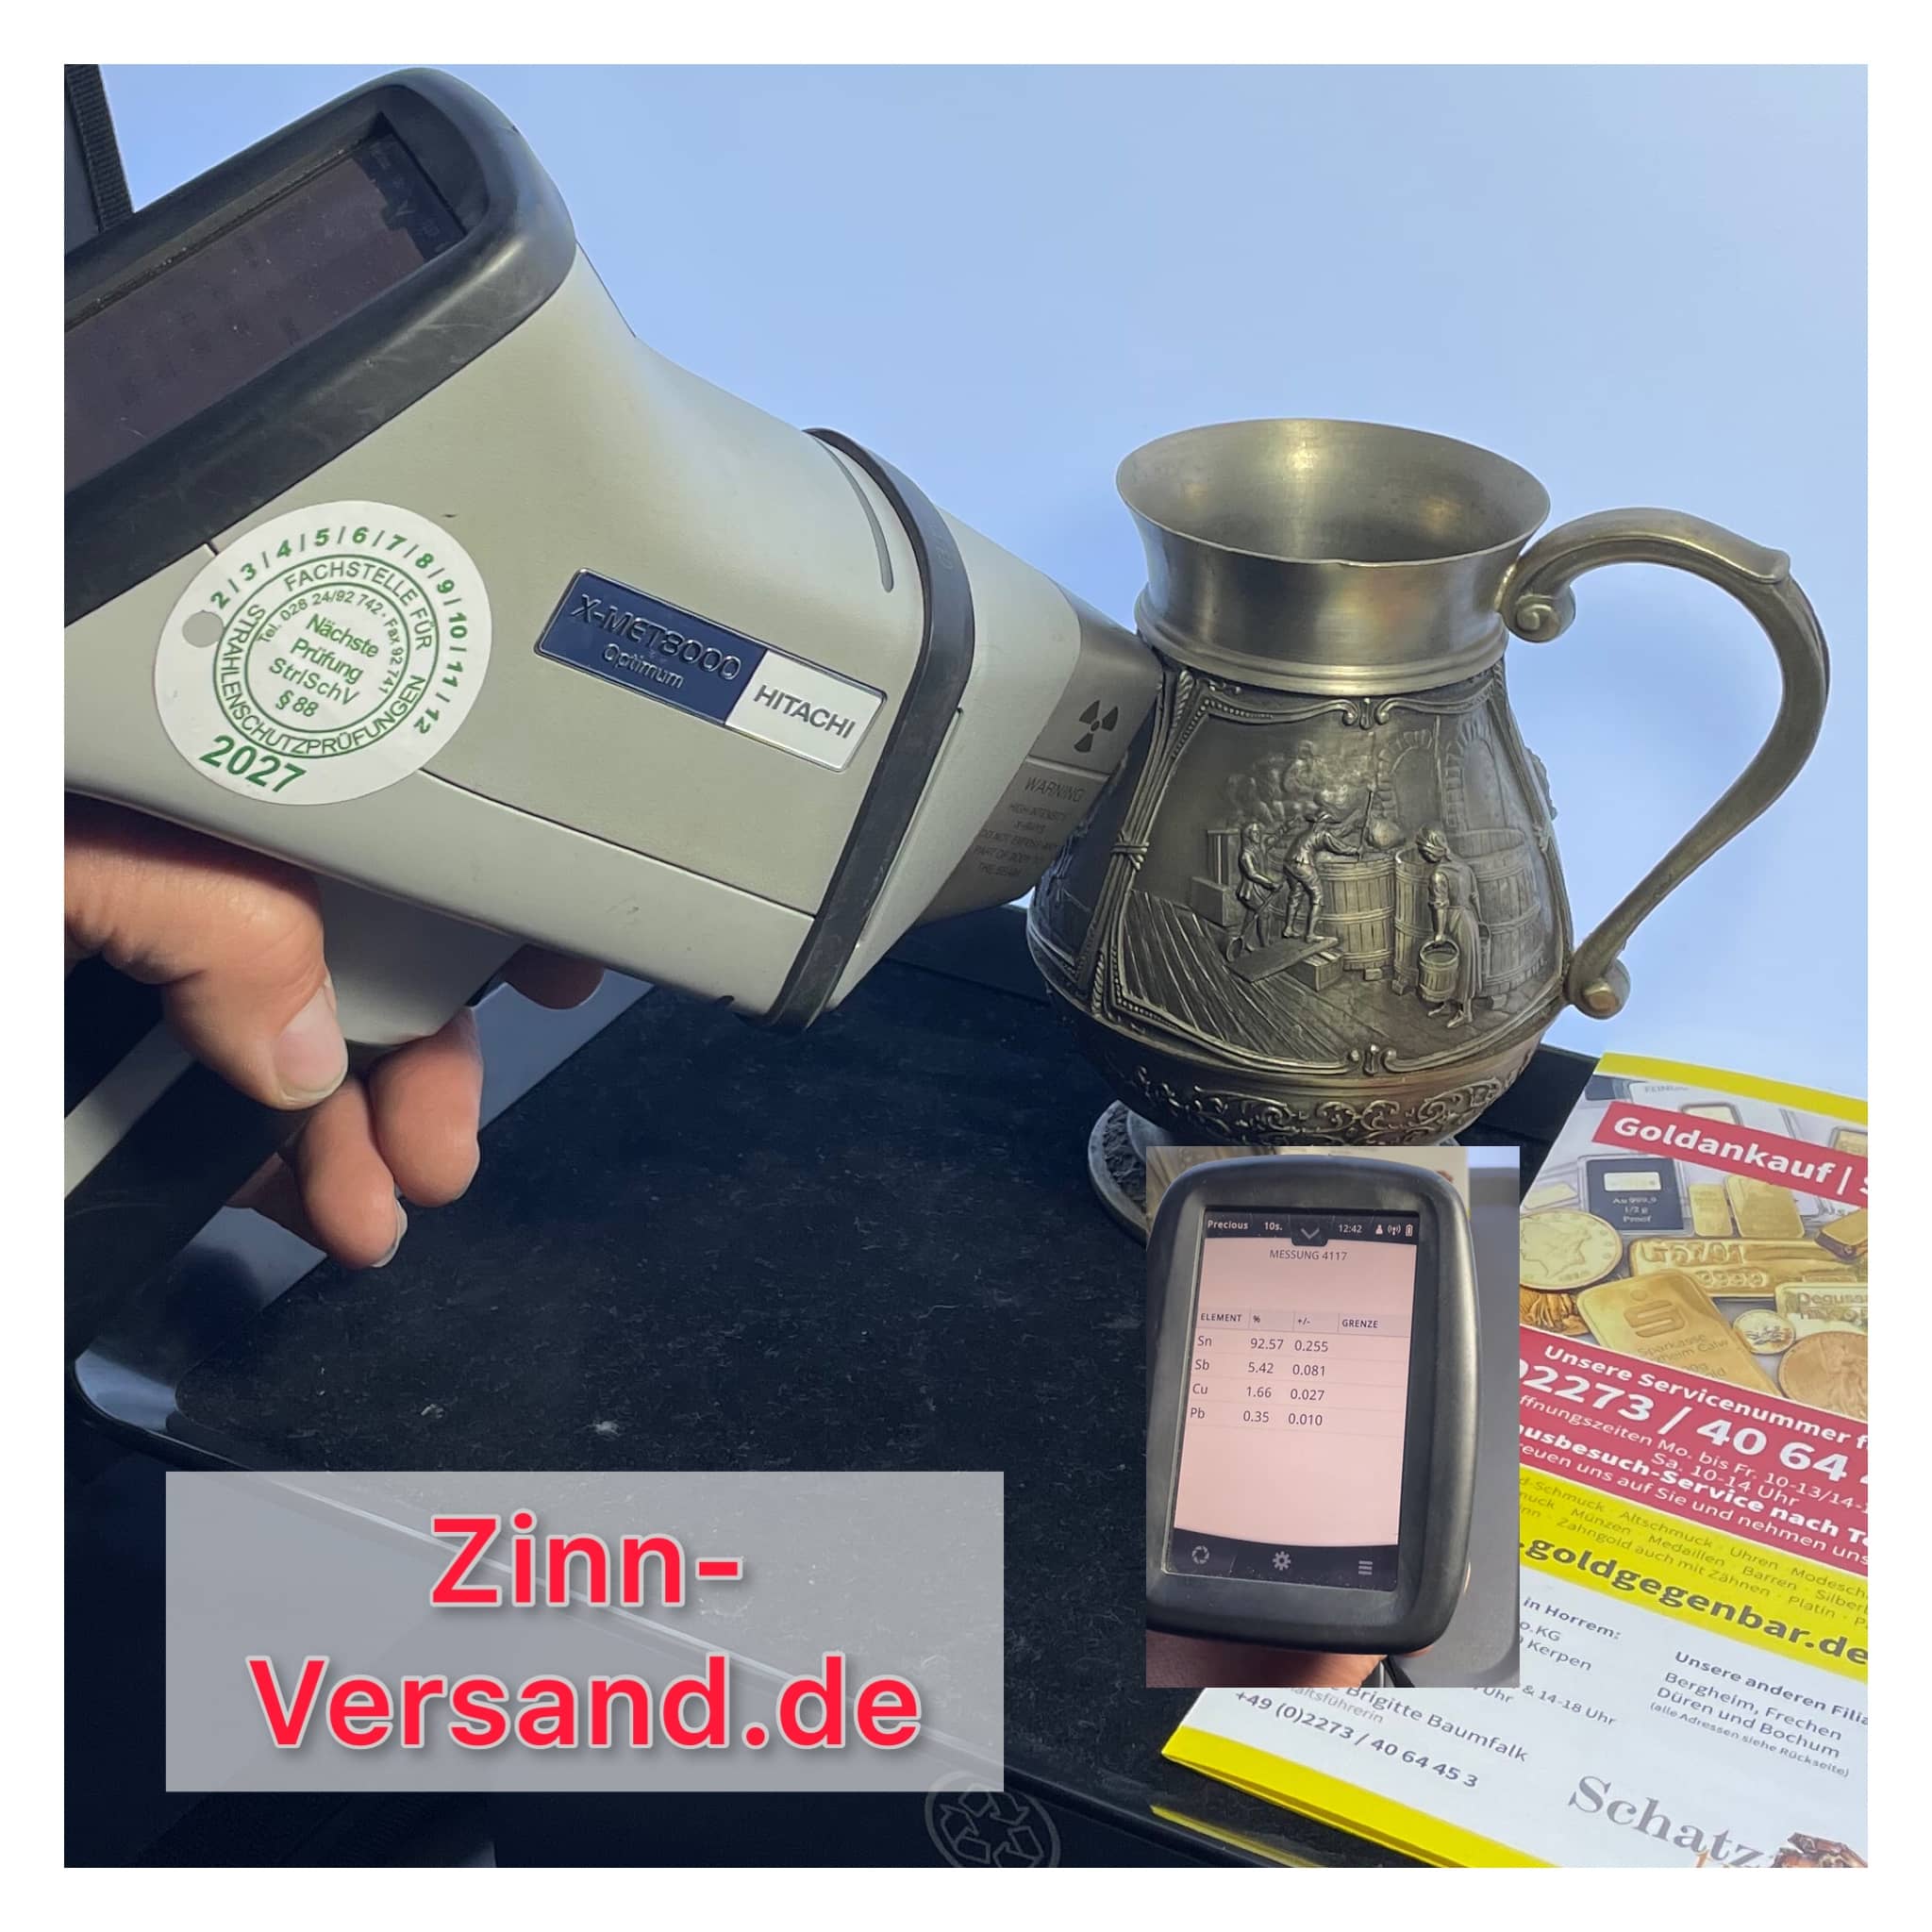 Zinn Ankauf
Zinn verkaufen
Deutschlandweiter Versandankauf